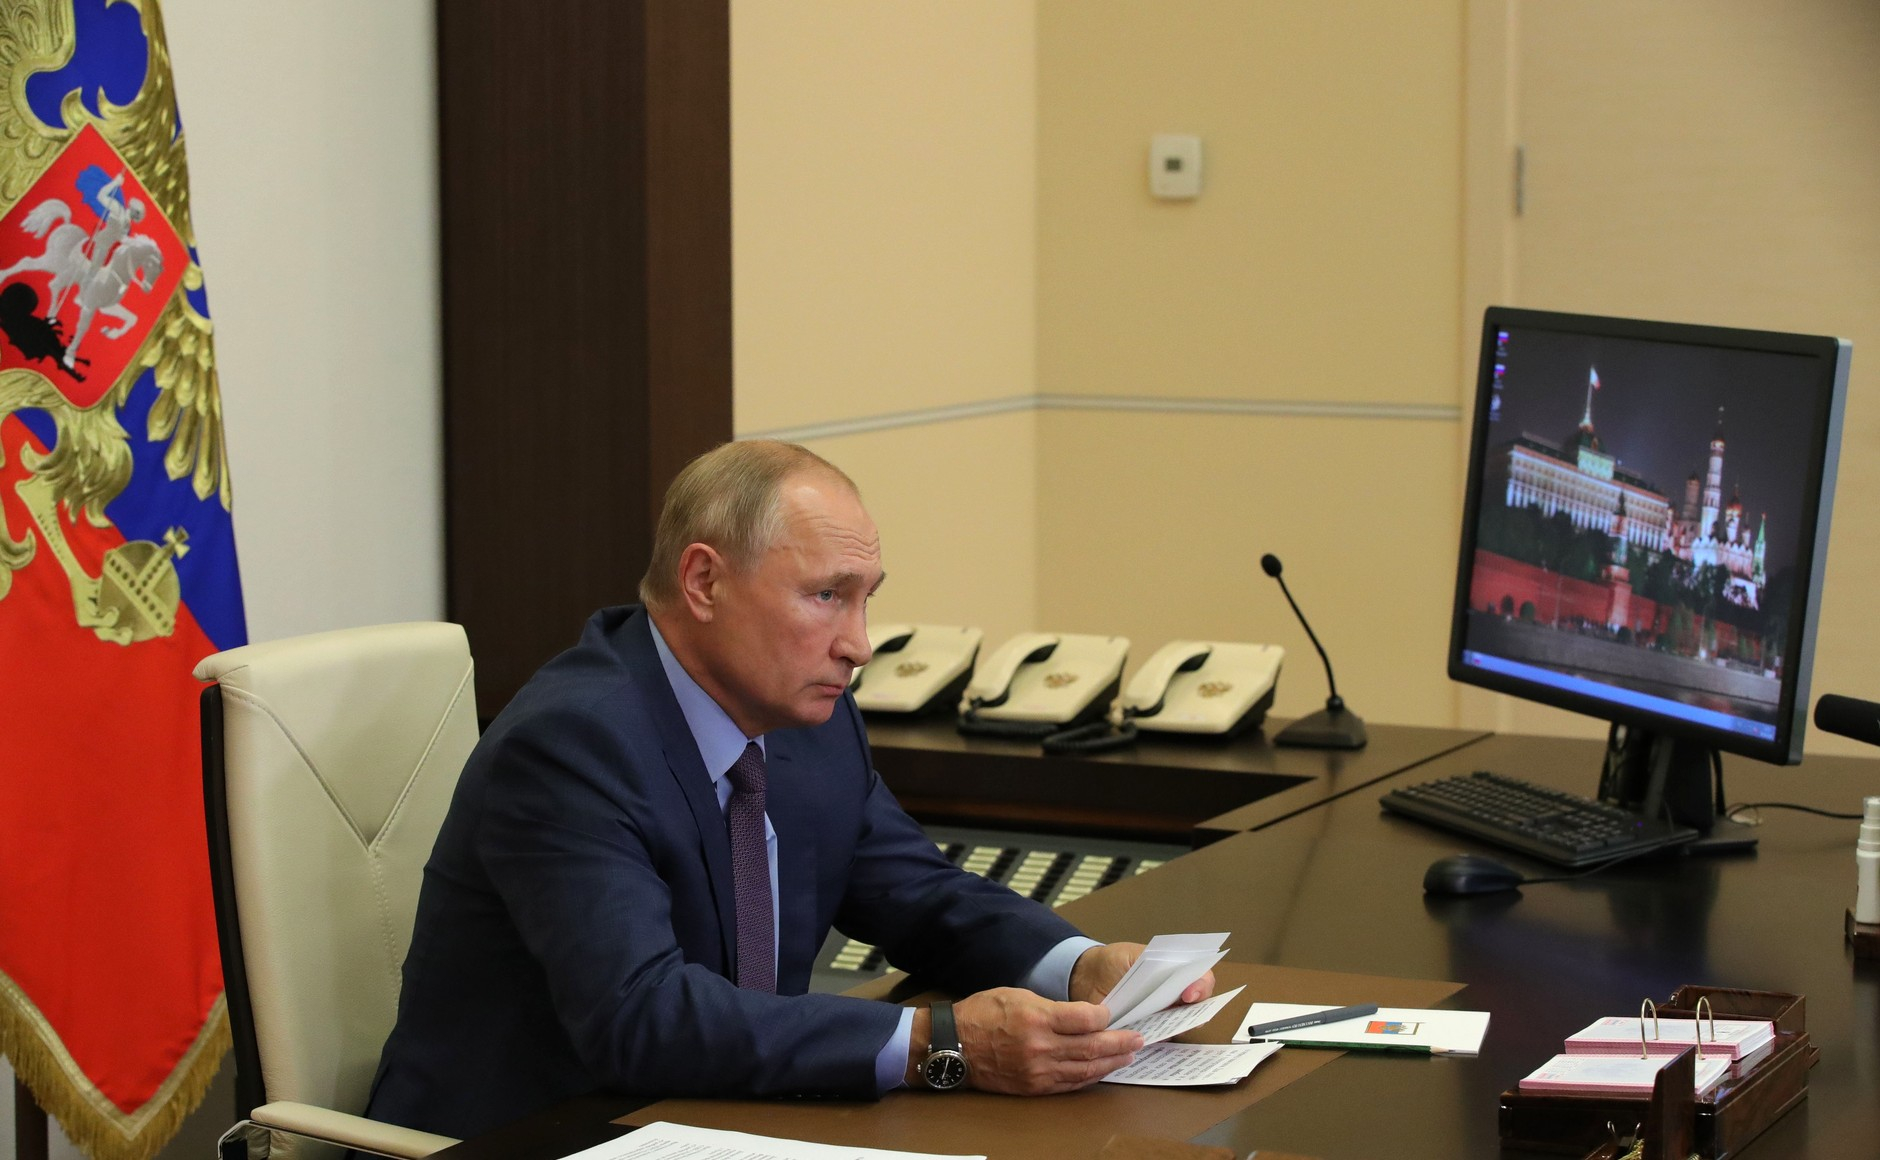 Владимир Путин может приехать на 800-летие Нижнего Новгорода в 2021 году